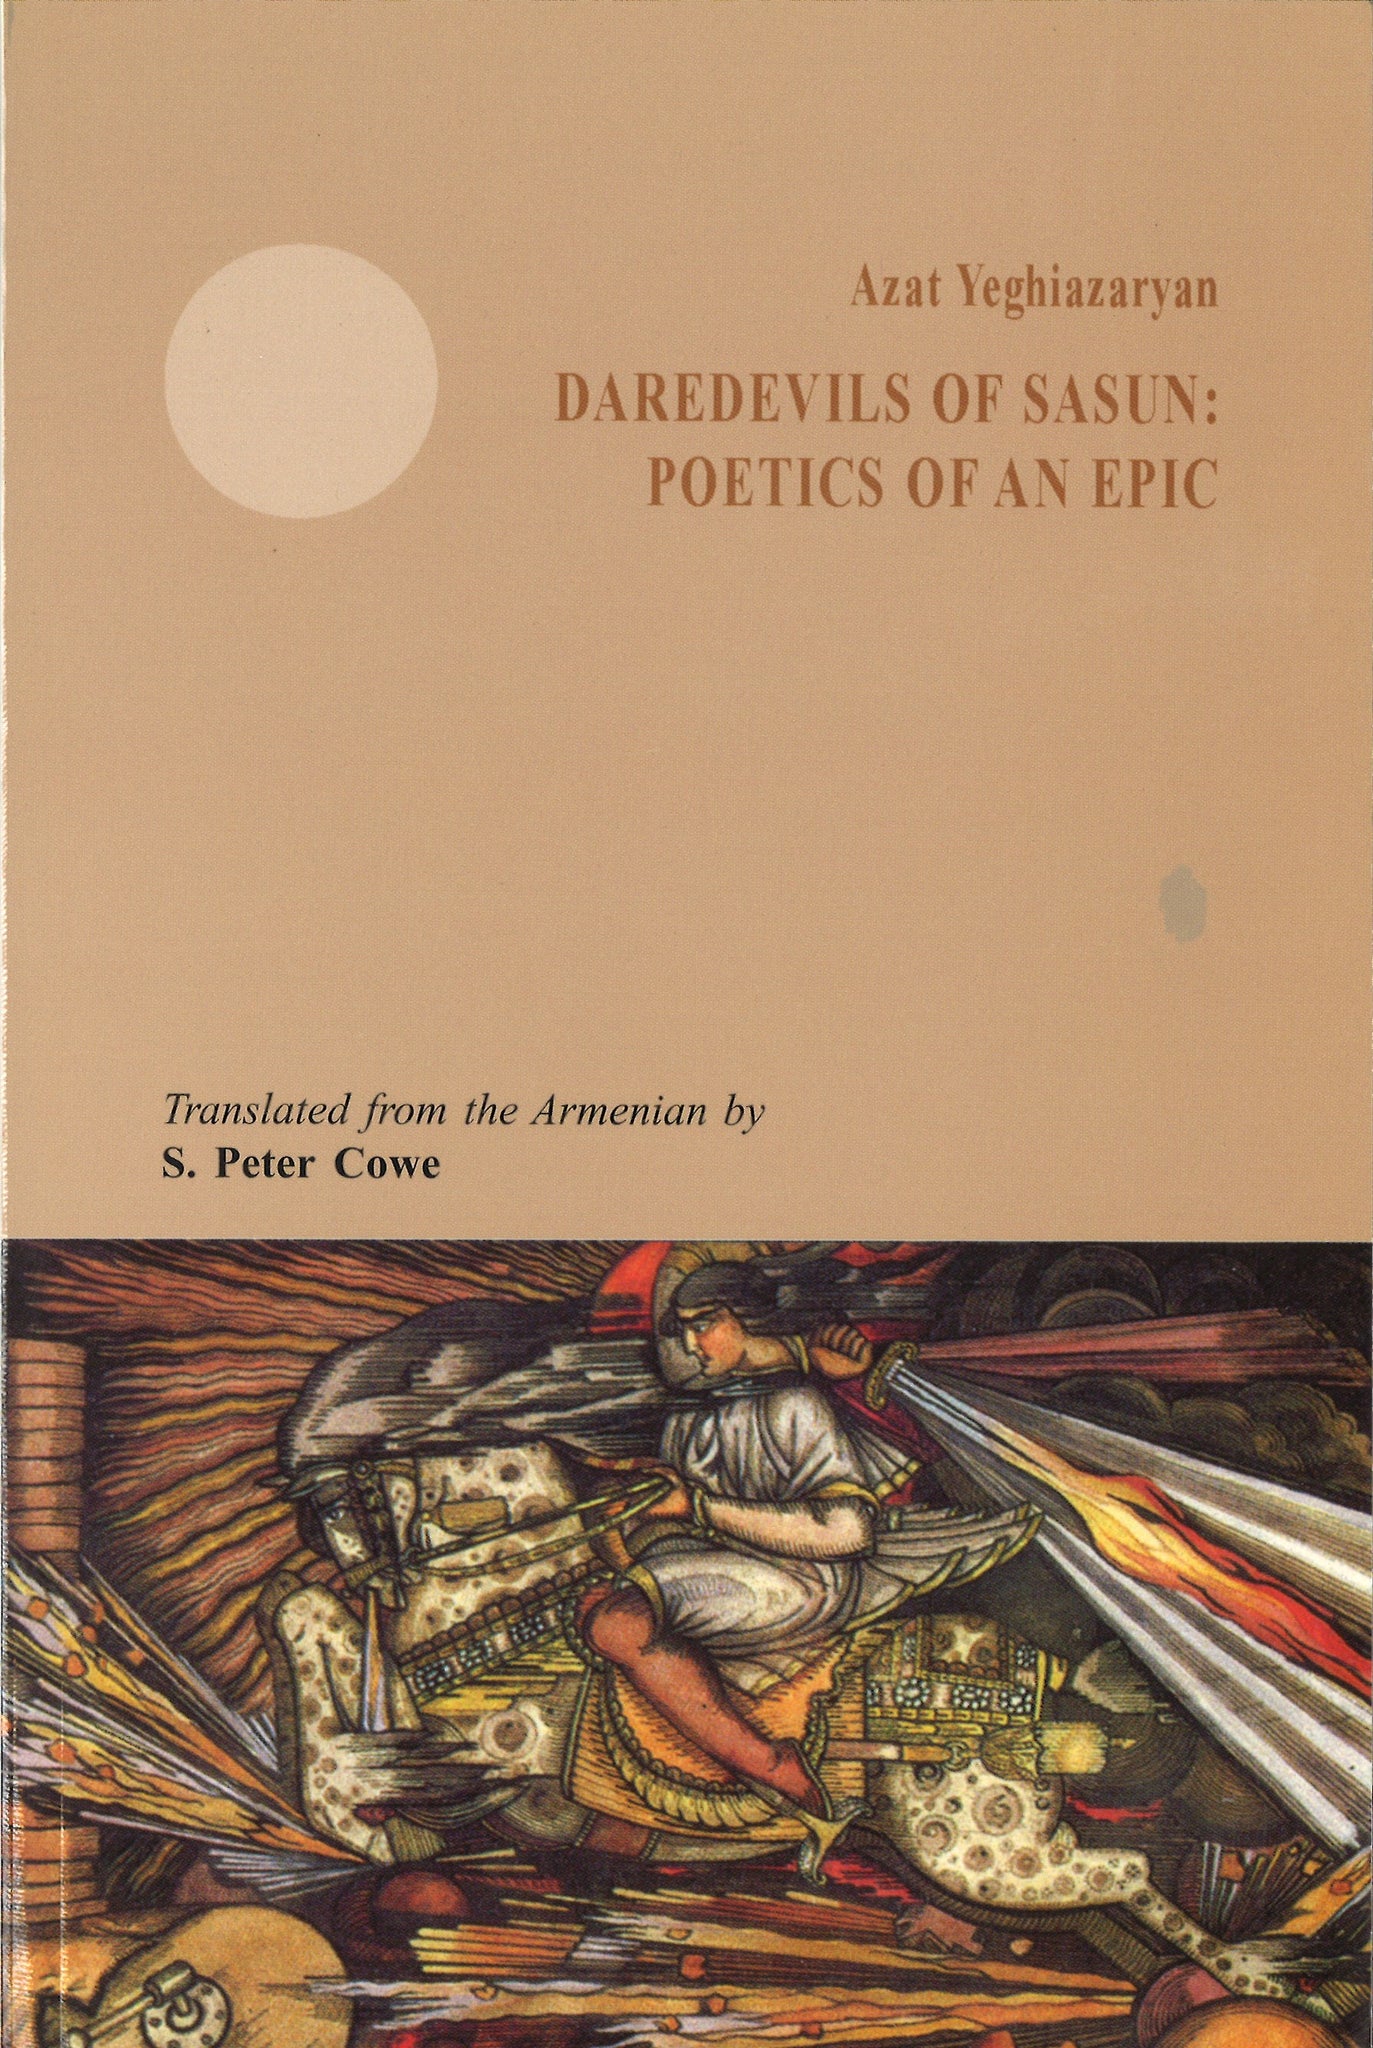 DAREDEVILS OF SASUN: POETICS OF AN EPIC